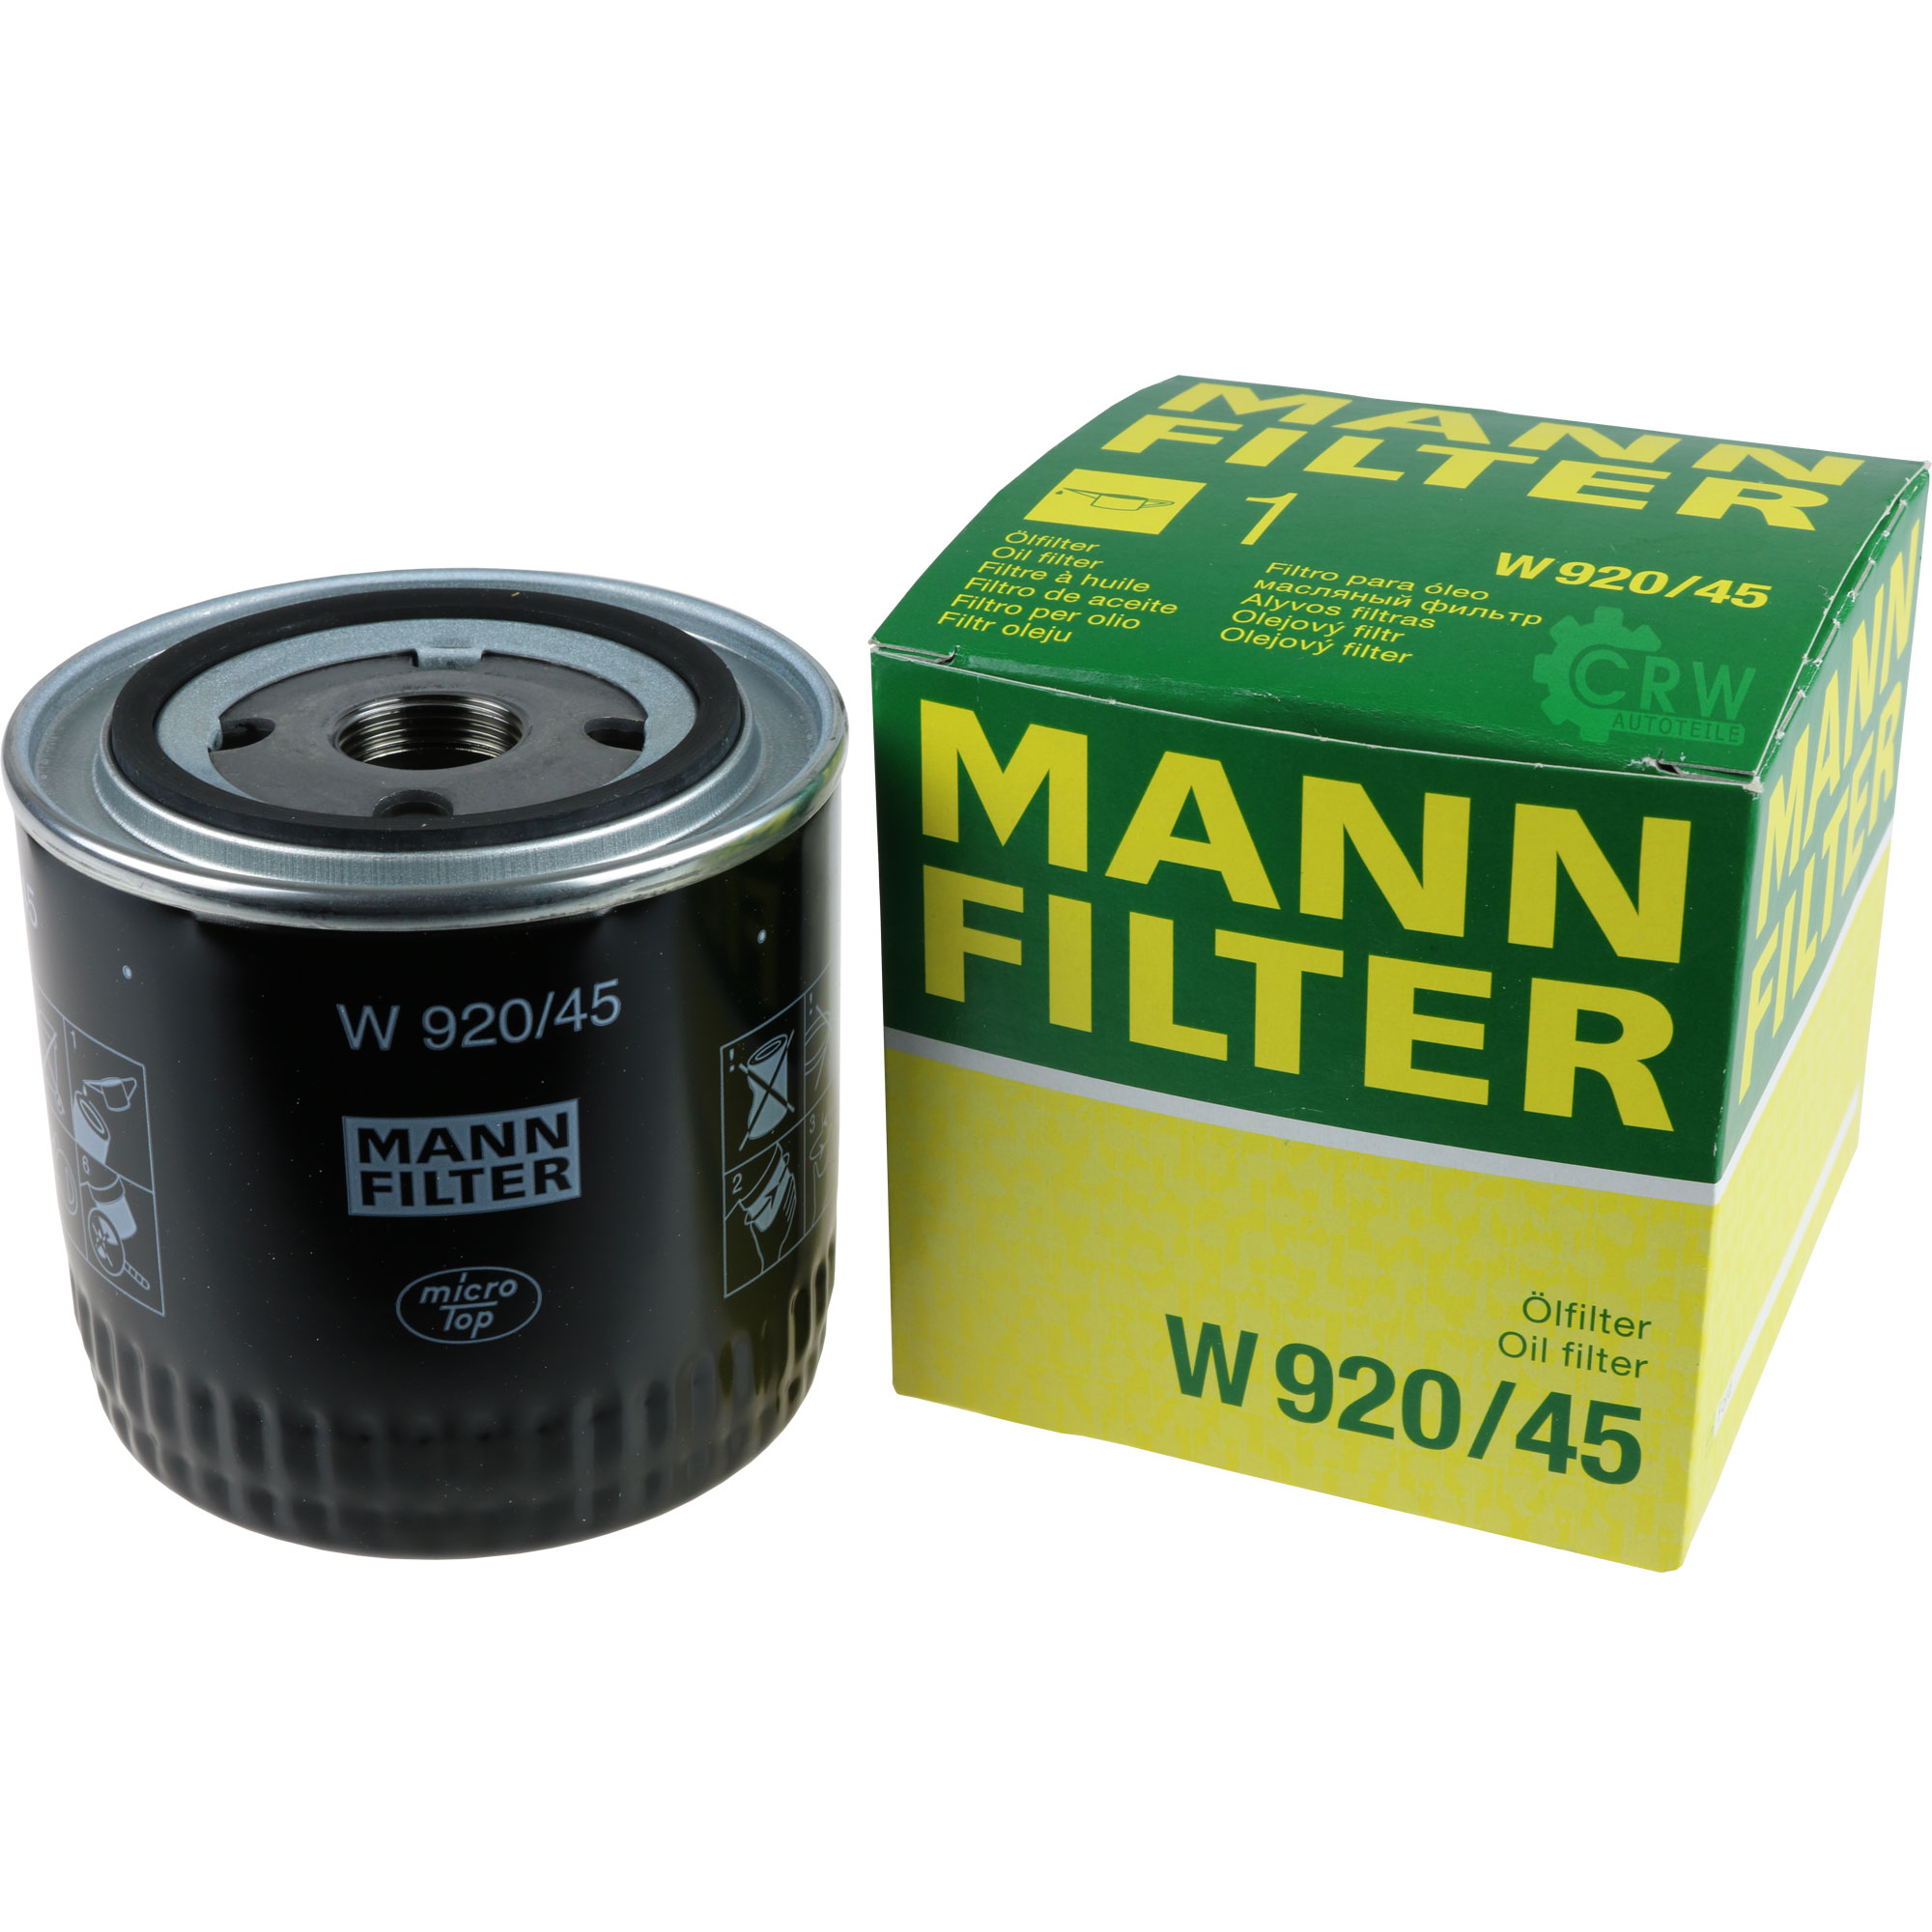 MANN-FILTER Ölfilter W 920/45 Oil Filter